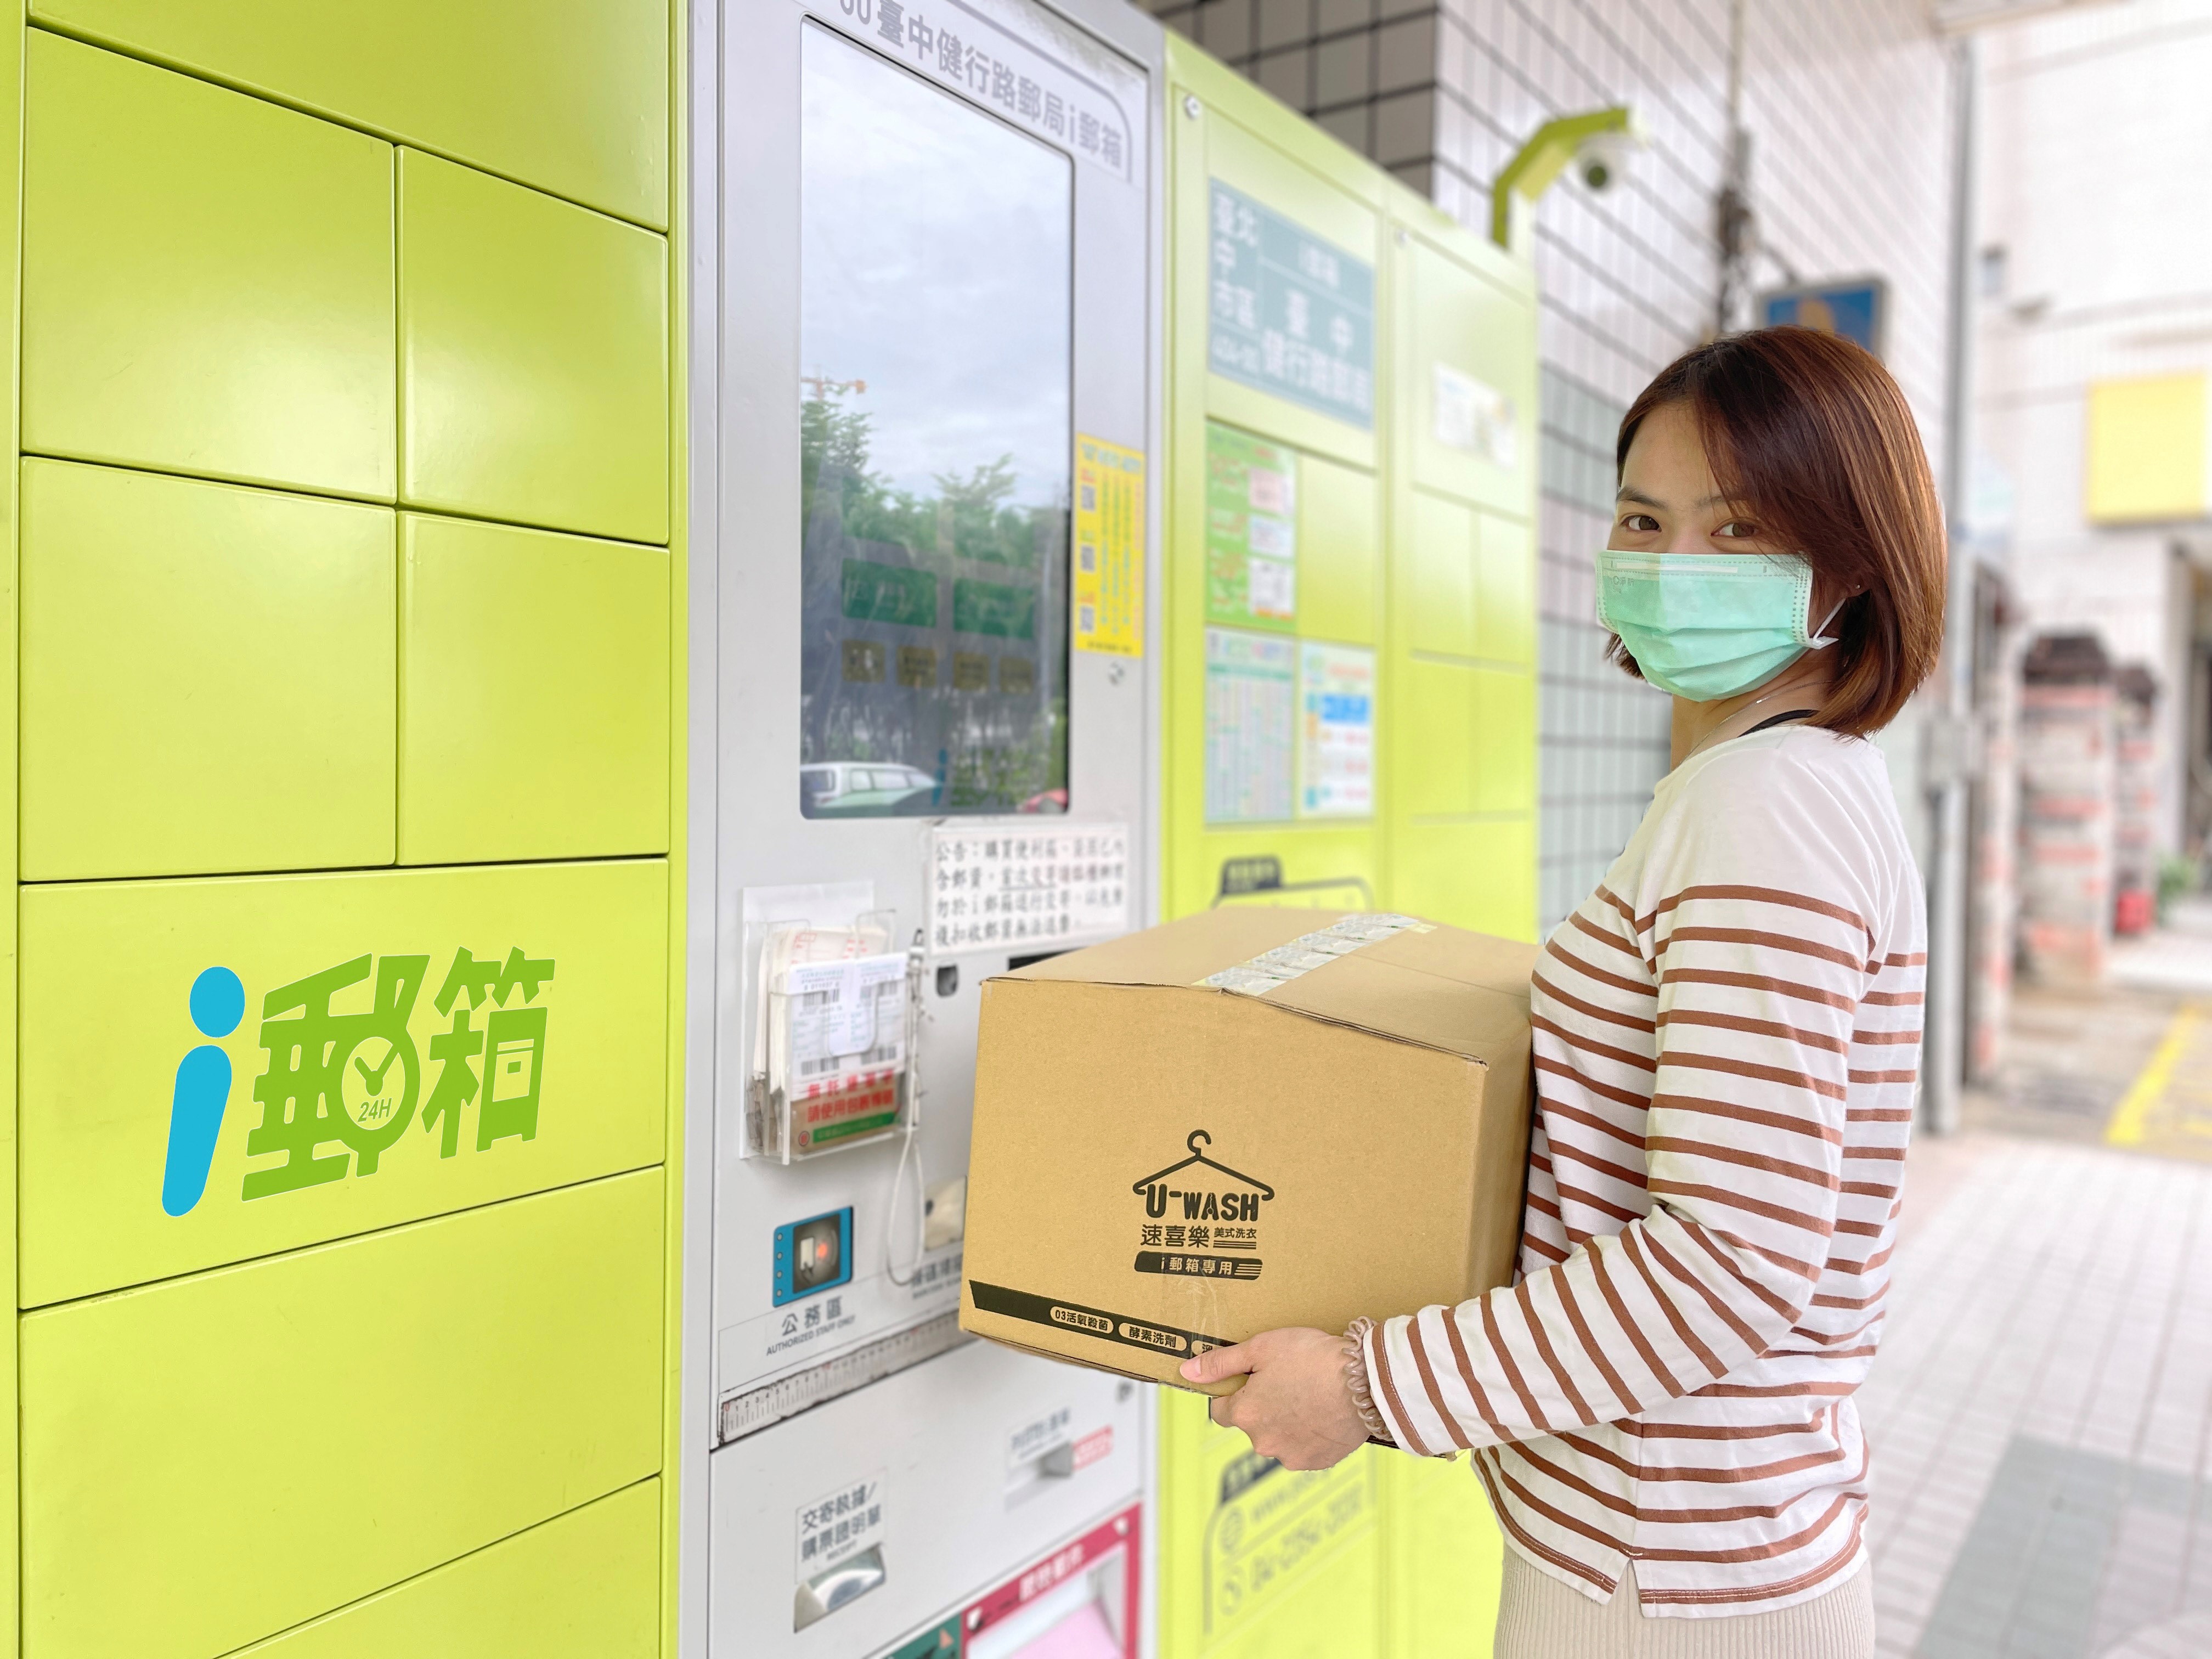 中華郵政與洗衣業者異業合作  透過i郵箱通路 送洗衣物超便捷